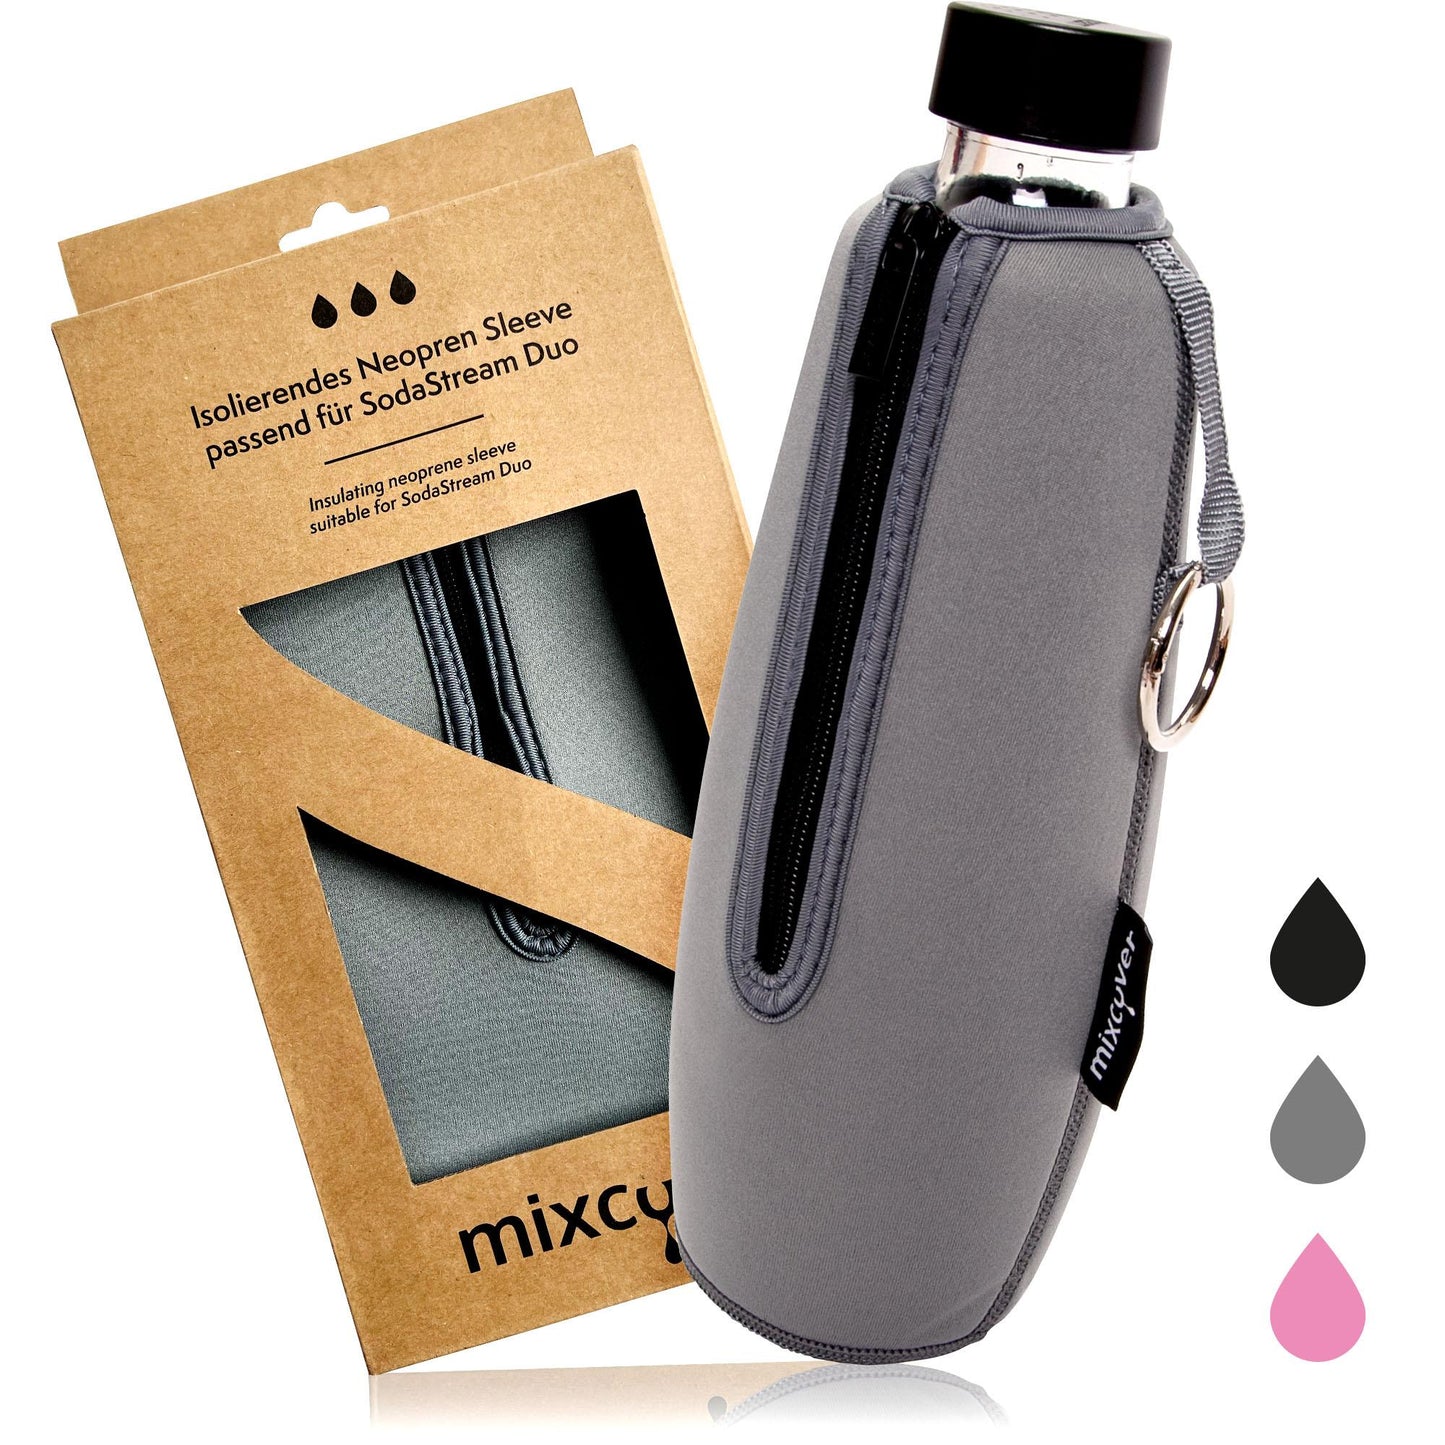 MixCover geïsoleerde flesbeschermingshuls compatibel met Sodastream duo glazen flessen beschermende afdekking voor flessen, bescherming tegen breuk en krassen, kleurgrijs